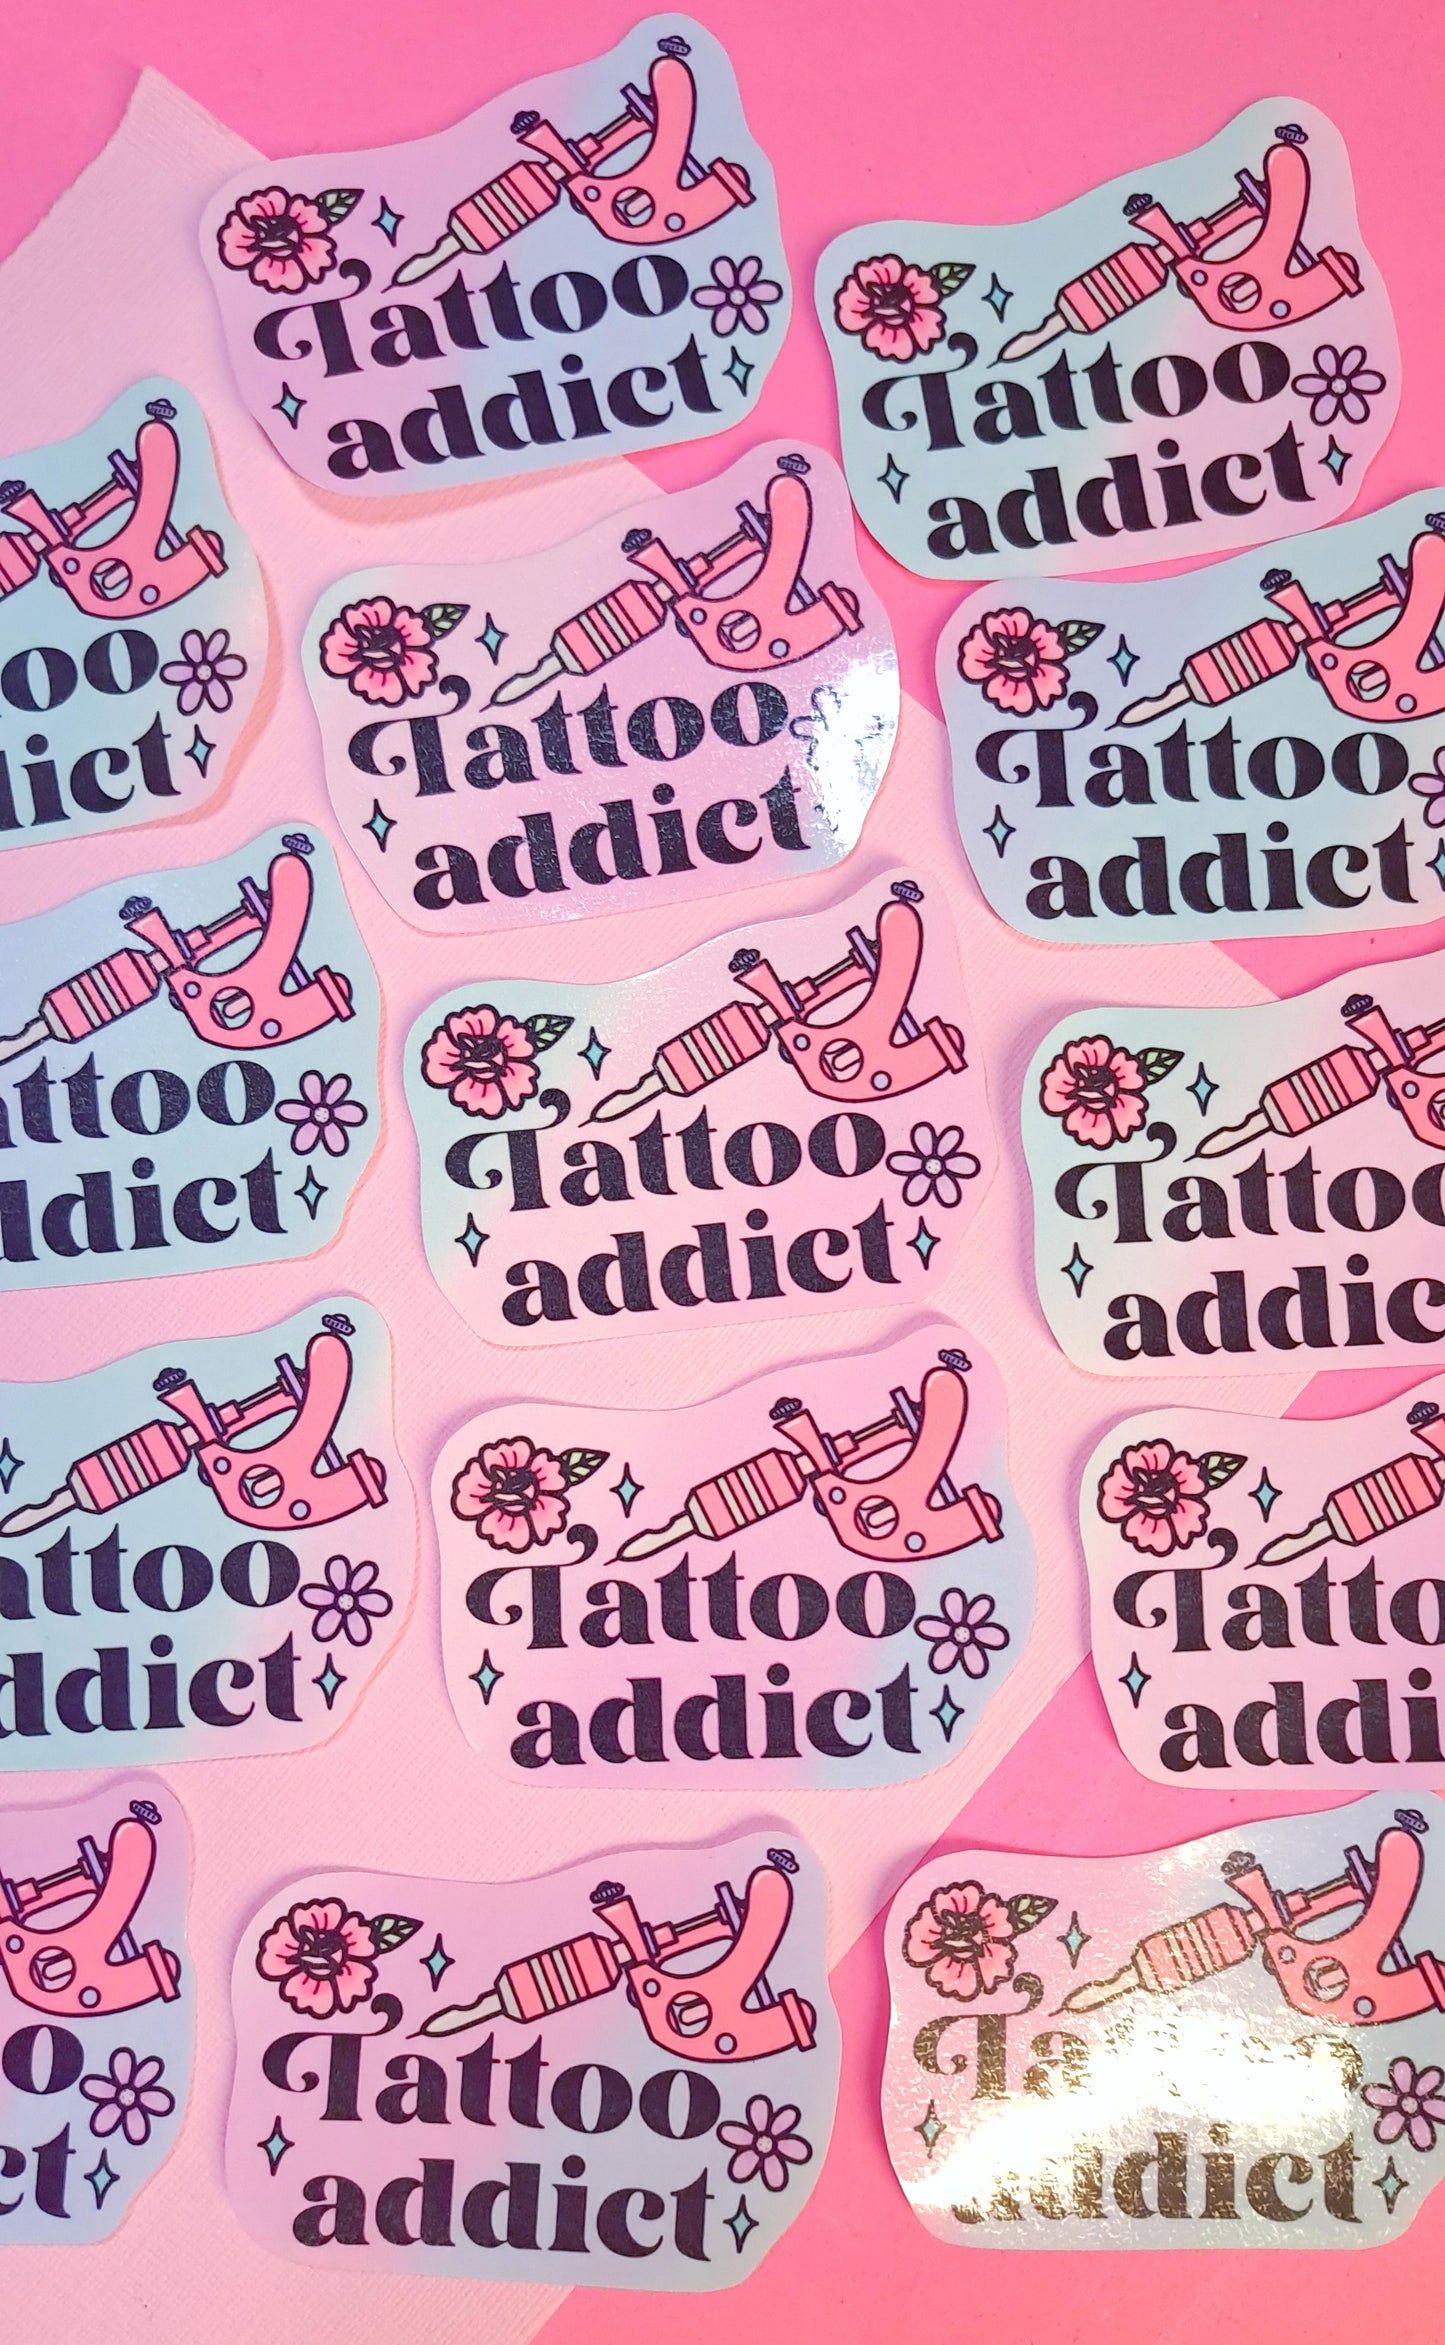 Tattoo Addict Sticker